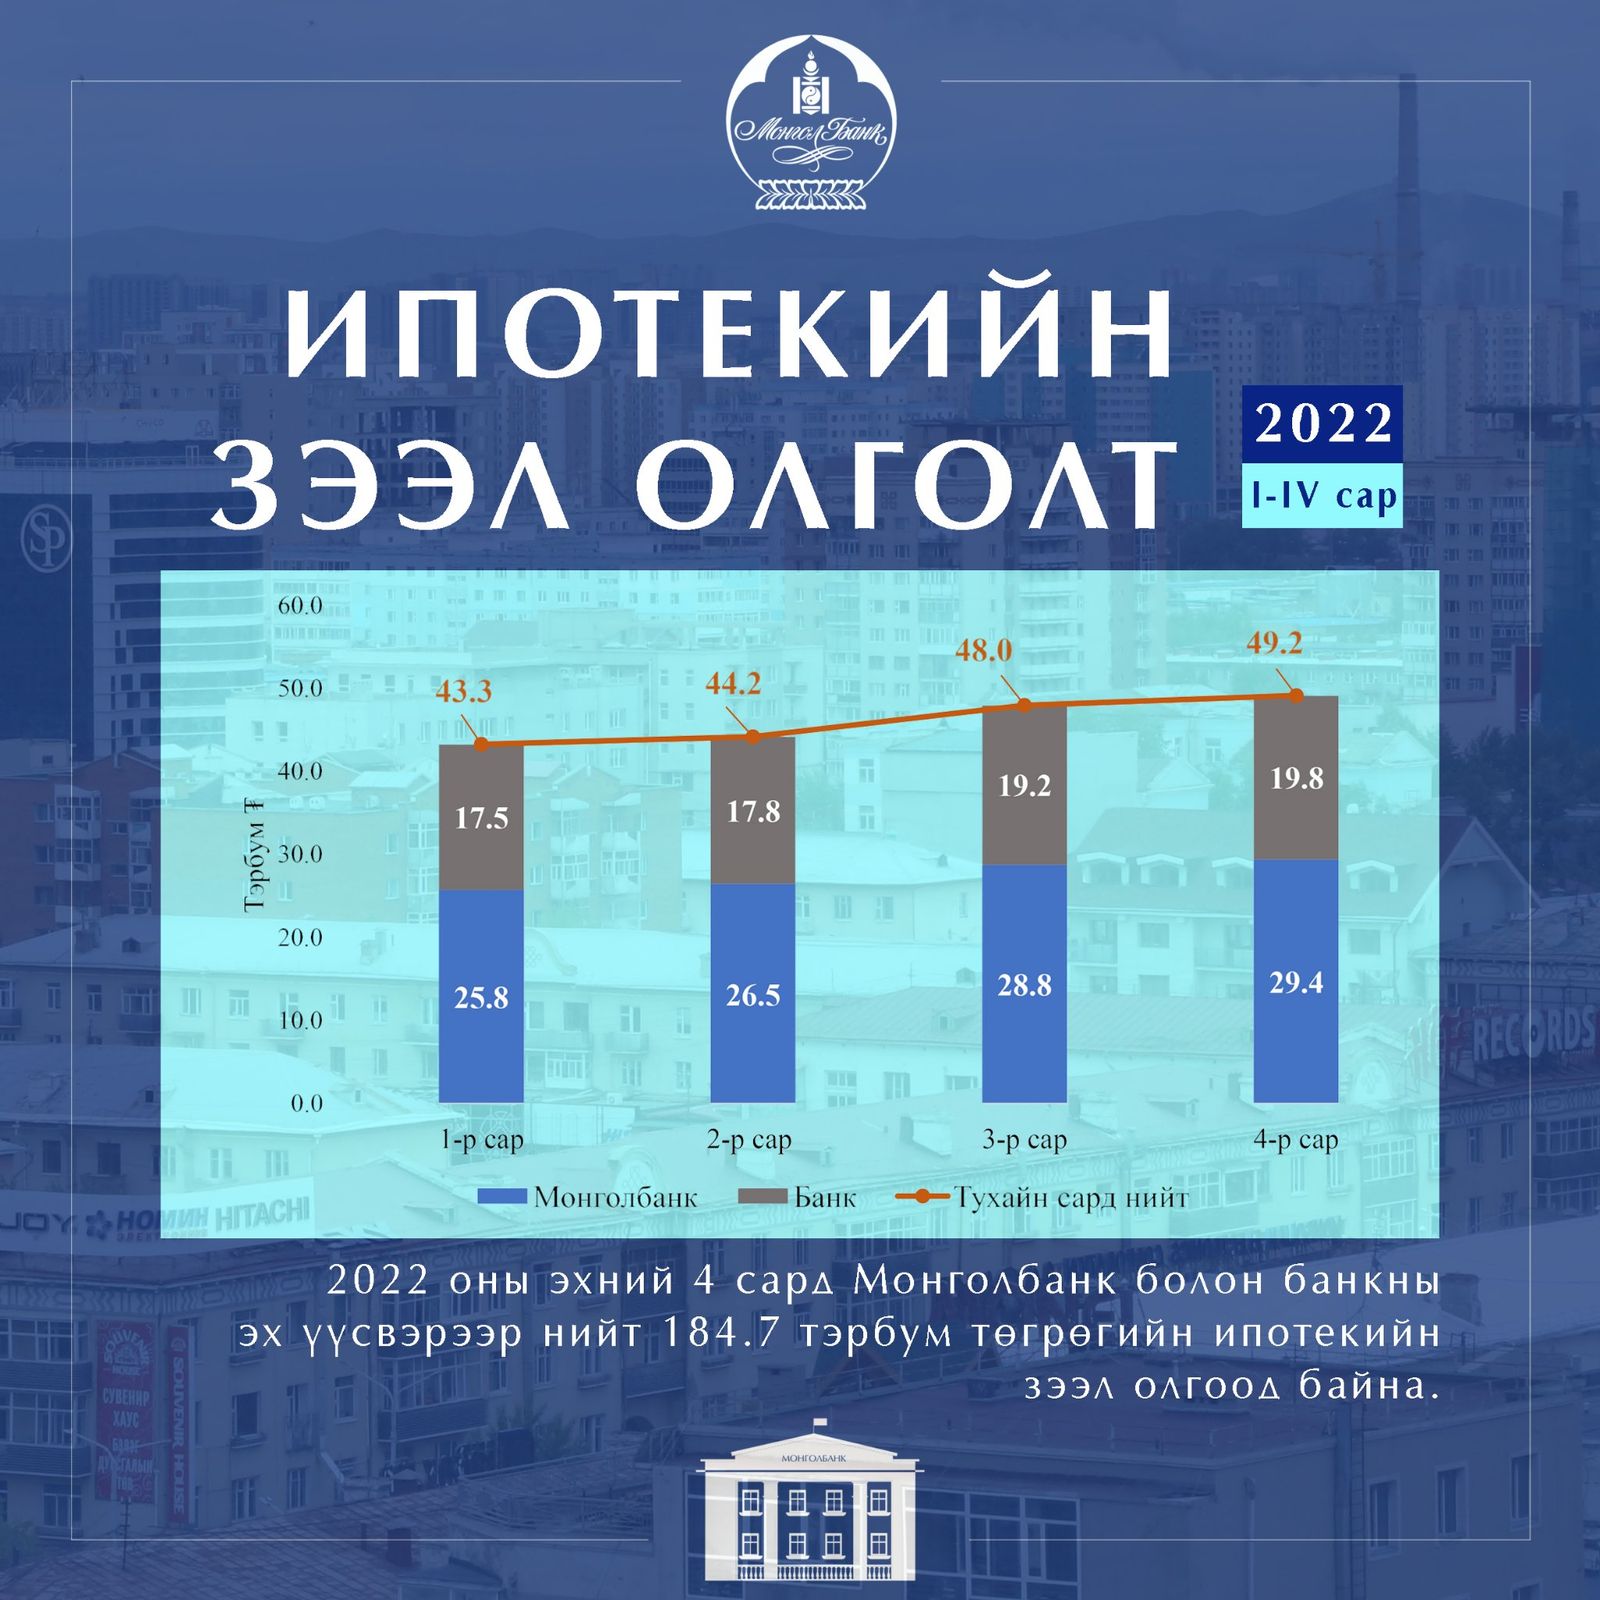 몽골 은행에서 1명의 대출자에게 발행되는 주택담보대출의 금액은 1억 투그릭을 초과하지 않을 것.jpg